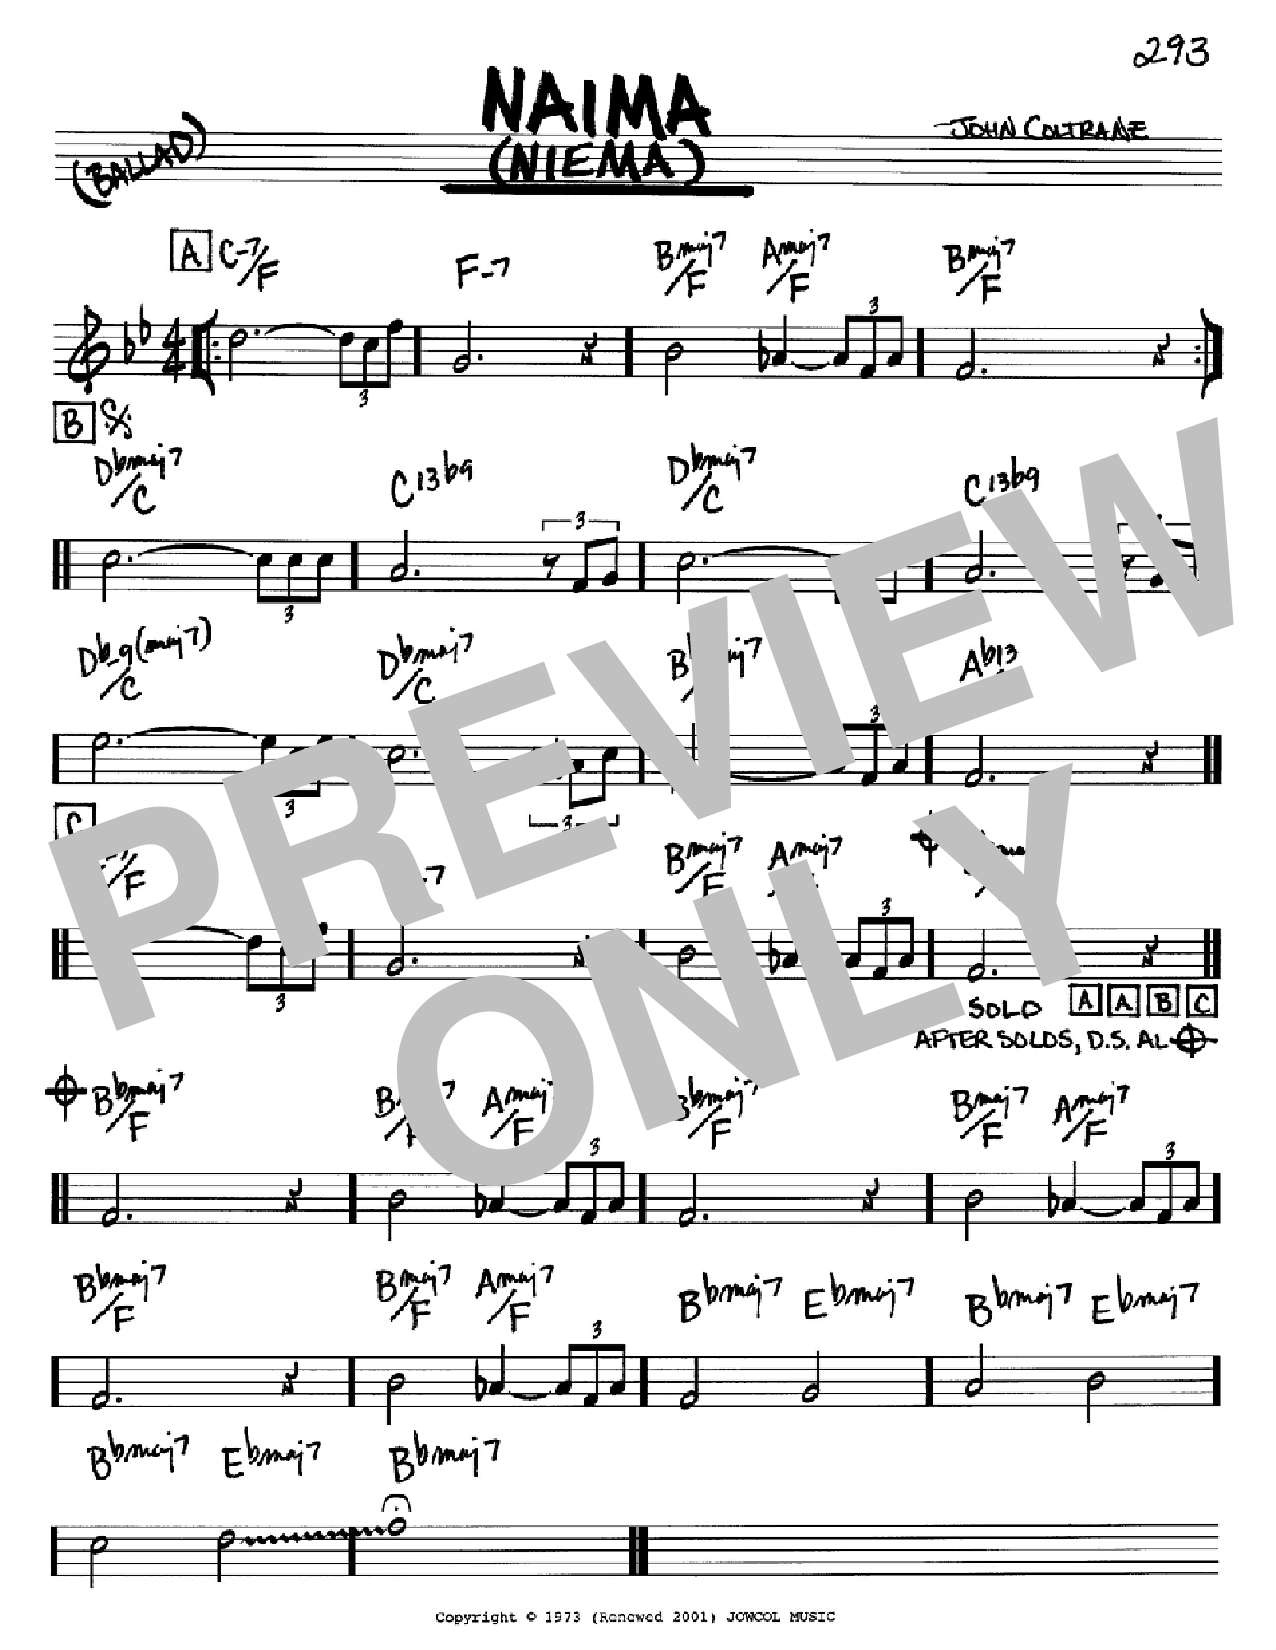 John Coltrane Naima (Niema) Sheet Music Notes & Chords for Real Book – Melody & Chords - Download or Print PDF